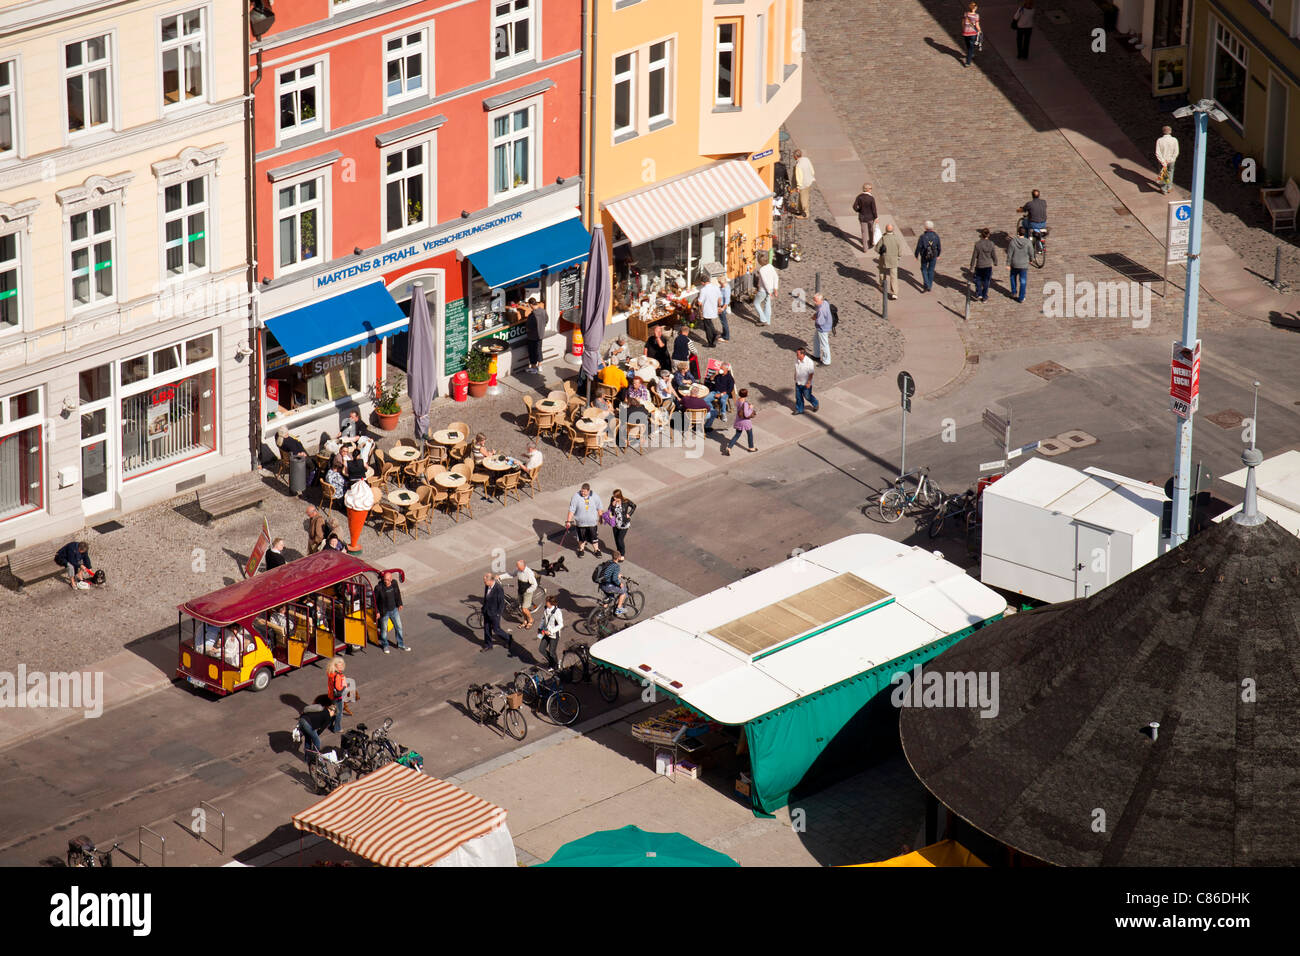 Street cafe e nuovo mercato visto dal di sopra, città anseatica di Stralsund, Meclenburgo-Pomerania Occidentale, Germania Foto Stock